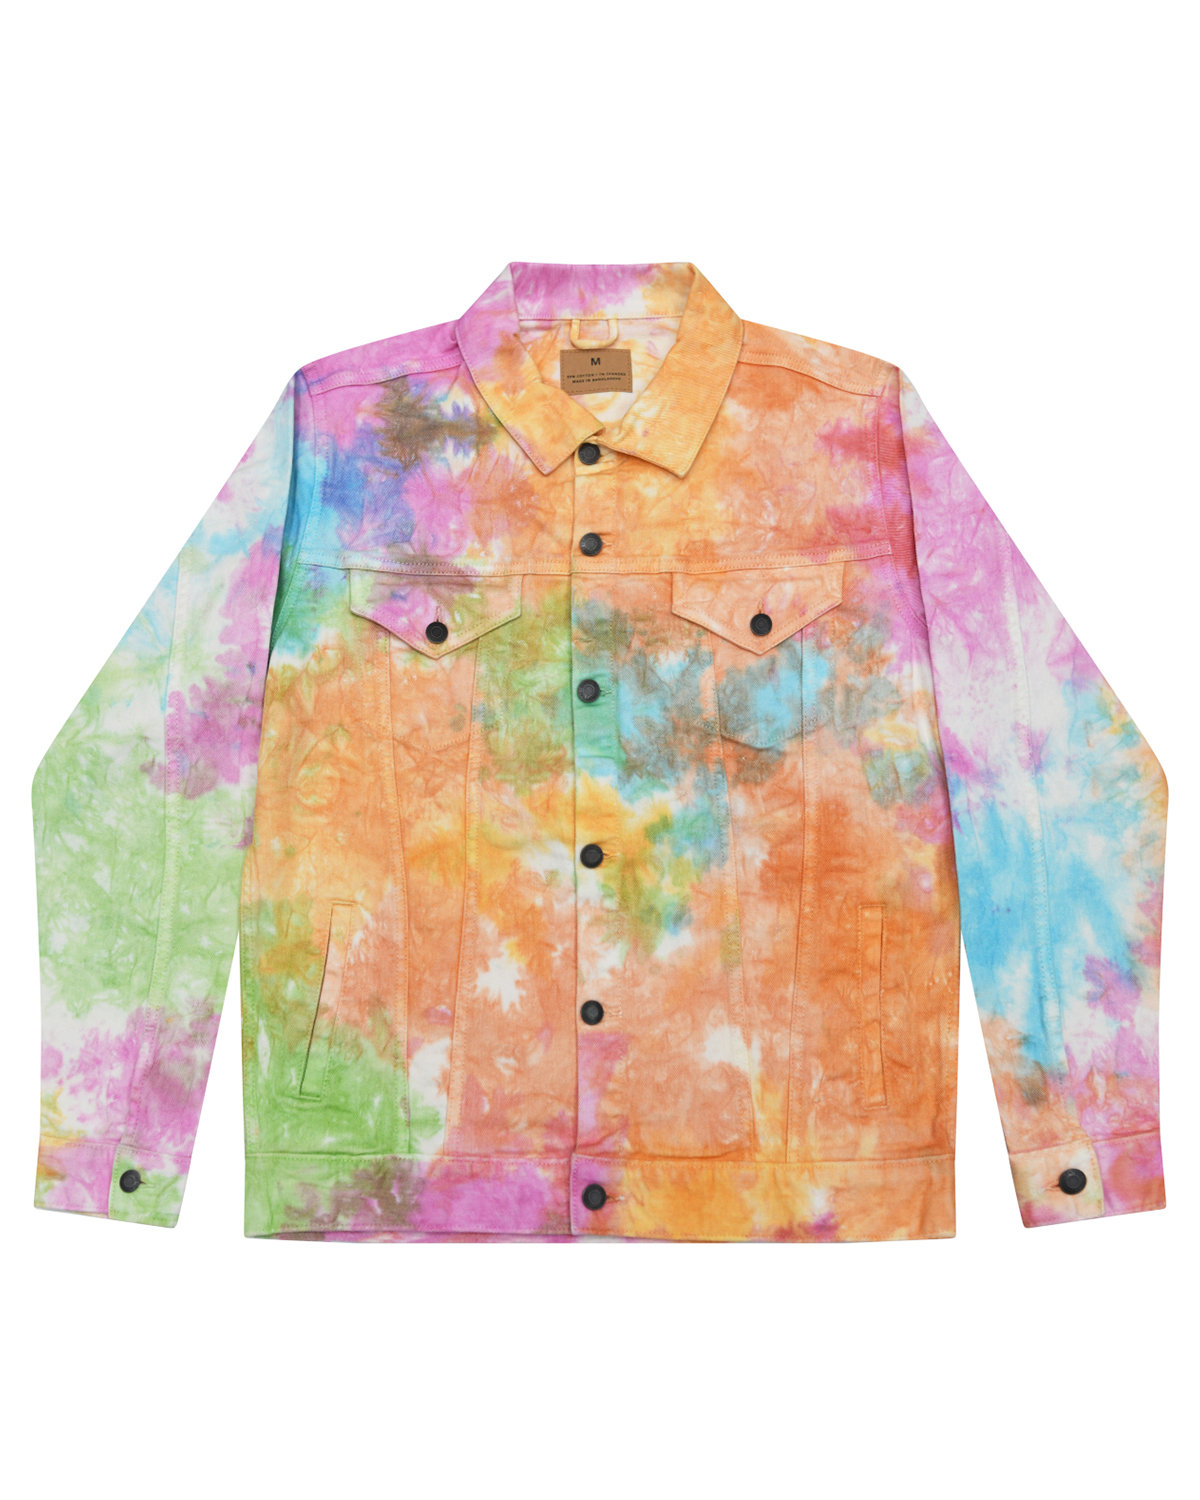 Buy Adult Denim Jacket - Tie-Dye Online at Best price - PA